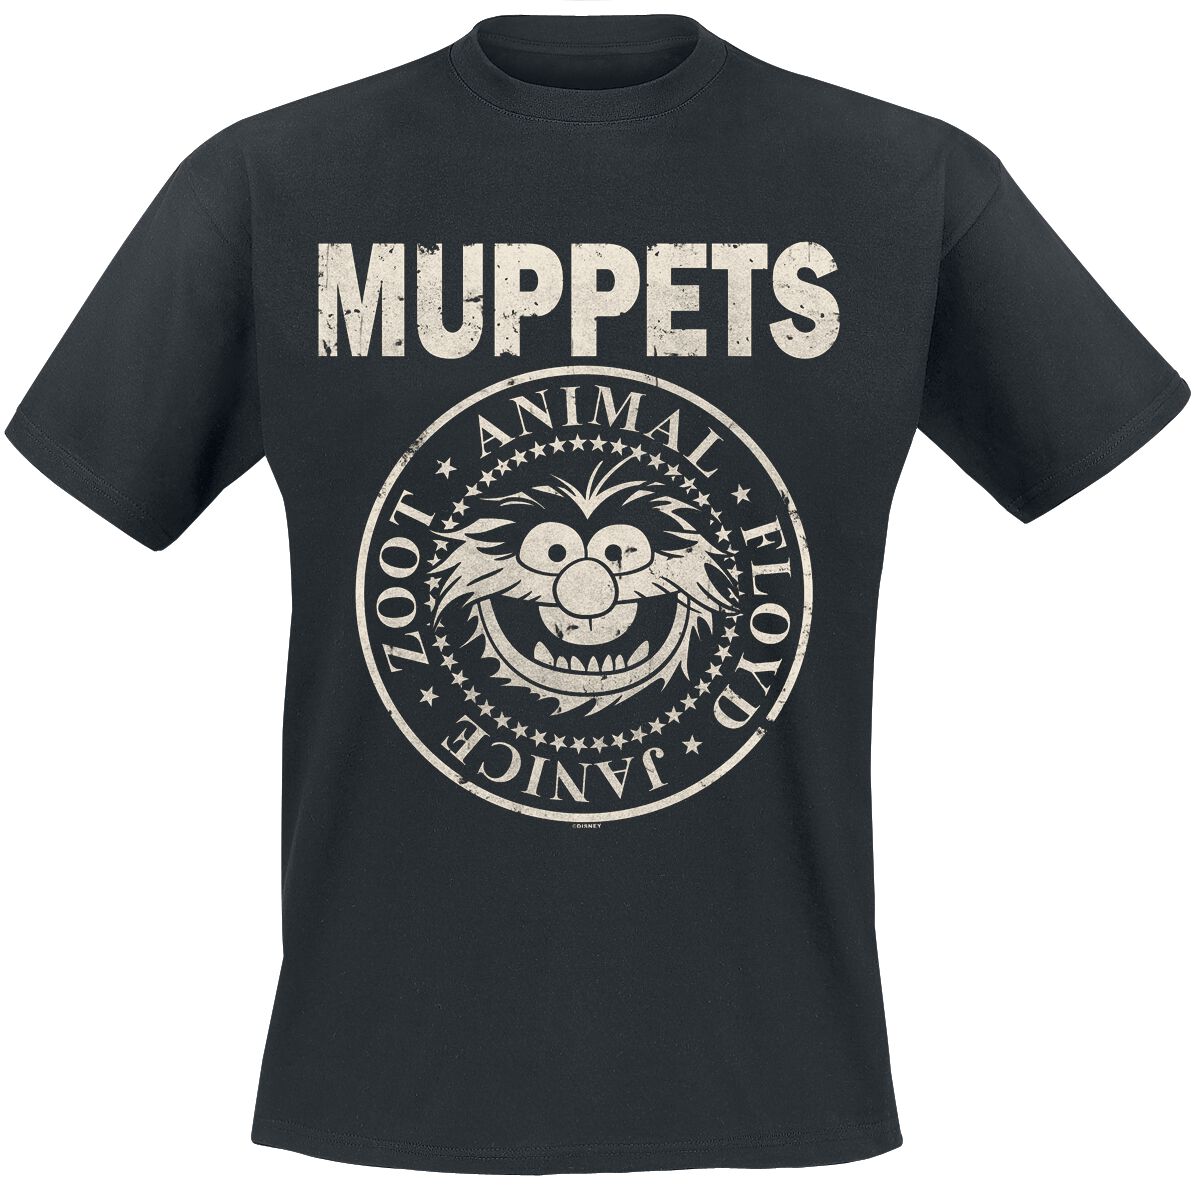 Die Muppets T-Shirt - Animal - Rock ´n Roll - S bis XXL - für Männer - Größe XL - schwarz  - EMP exklusives Merchandise!